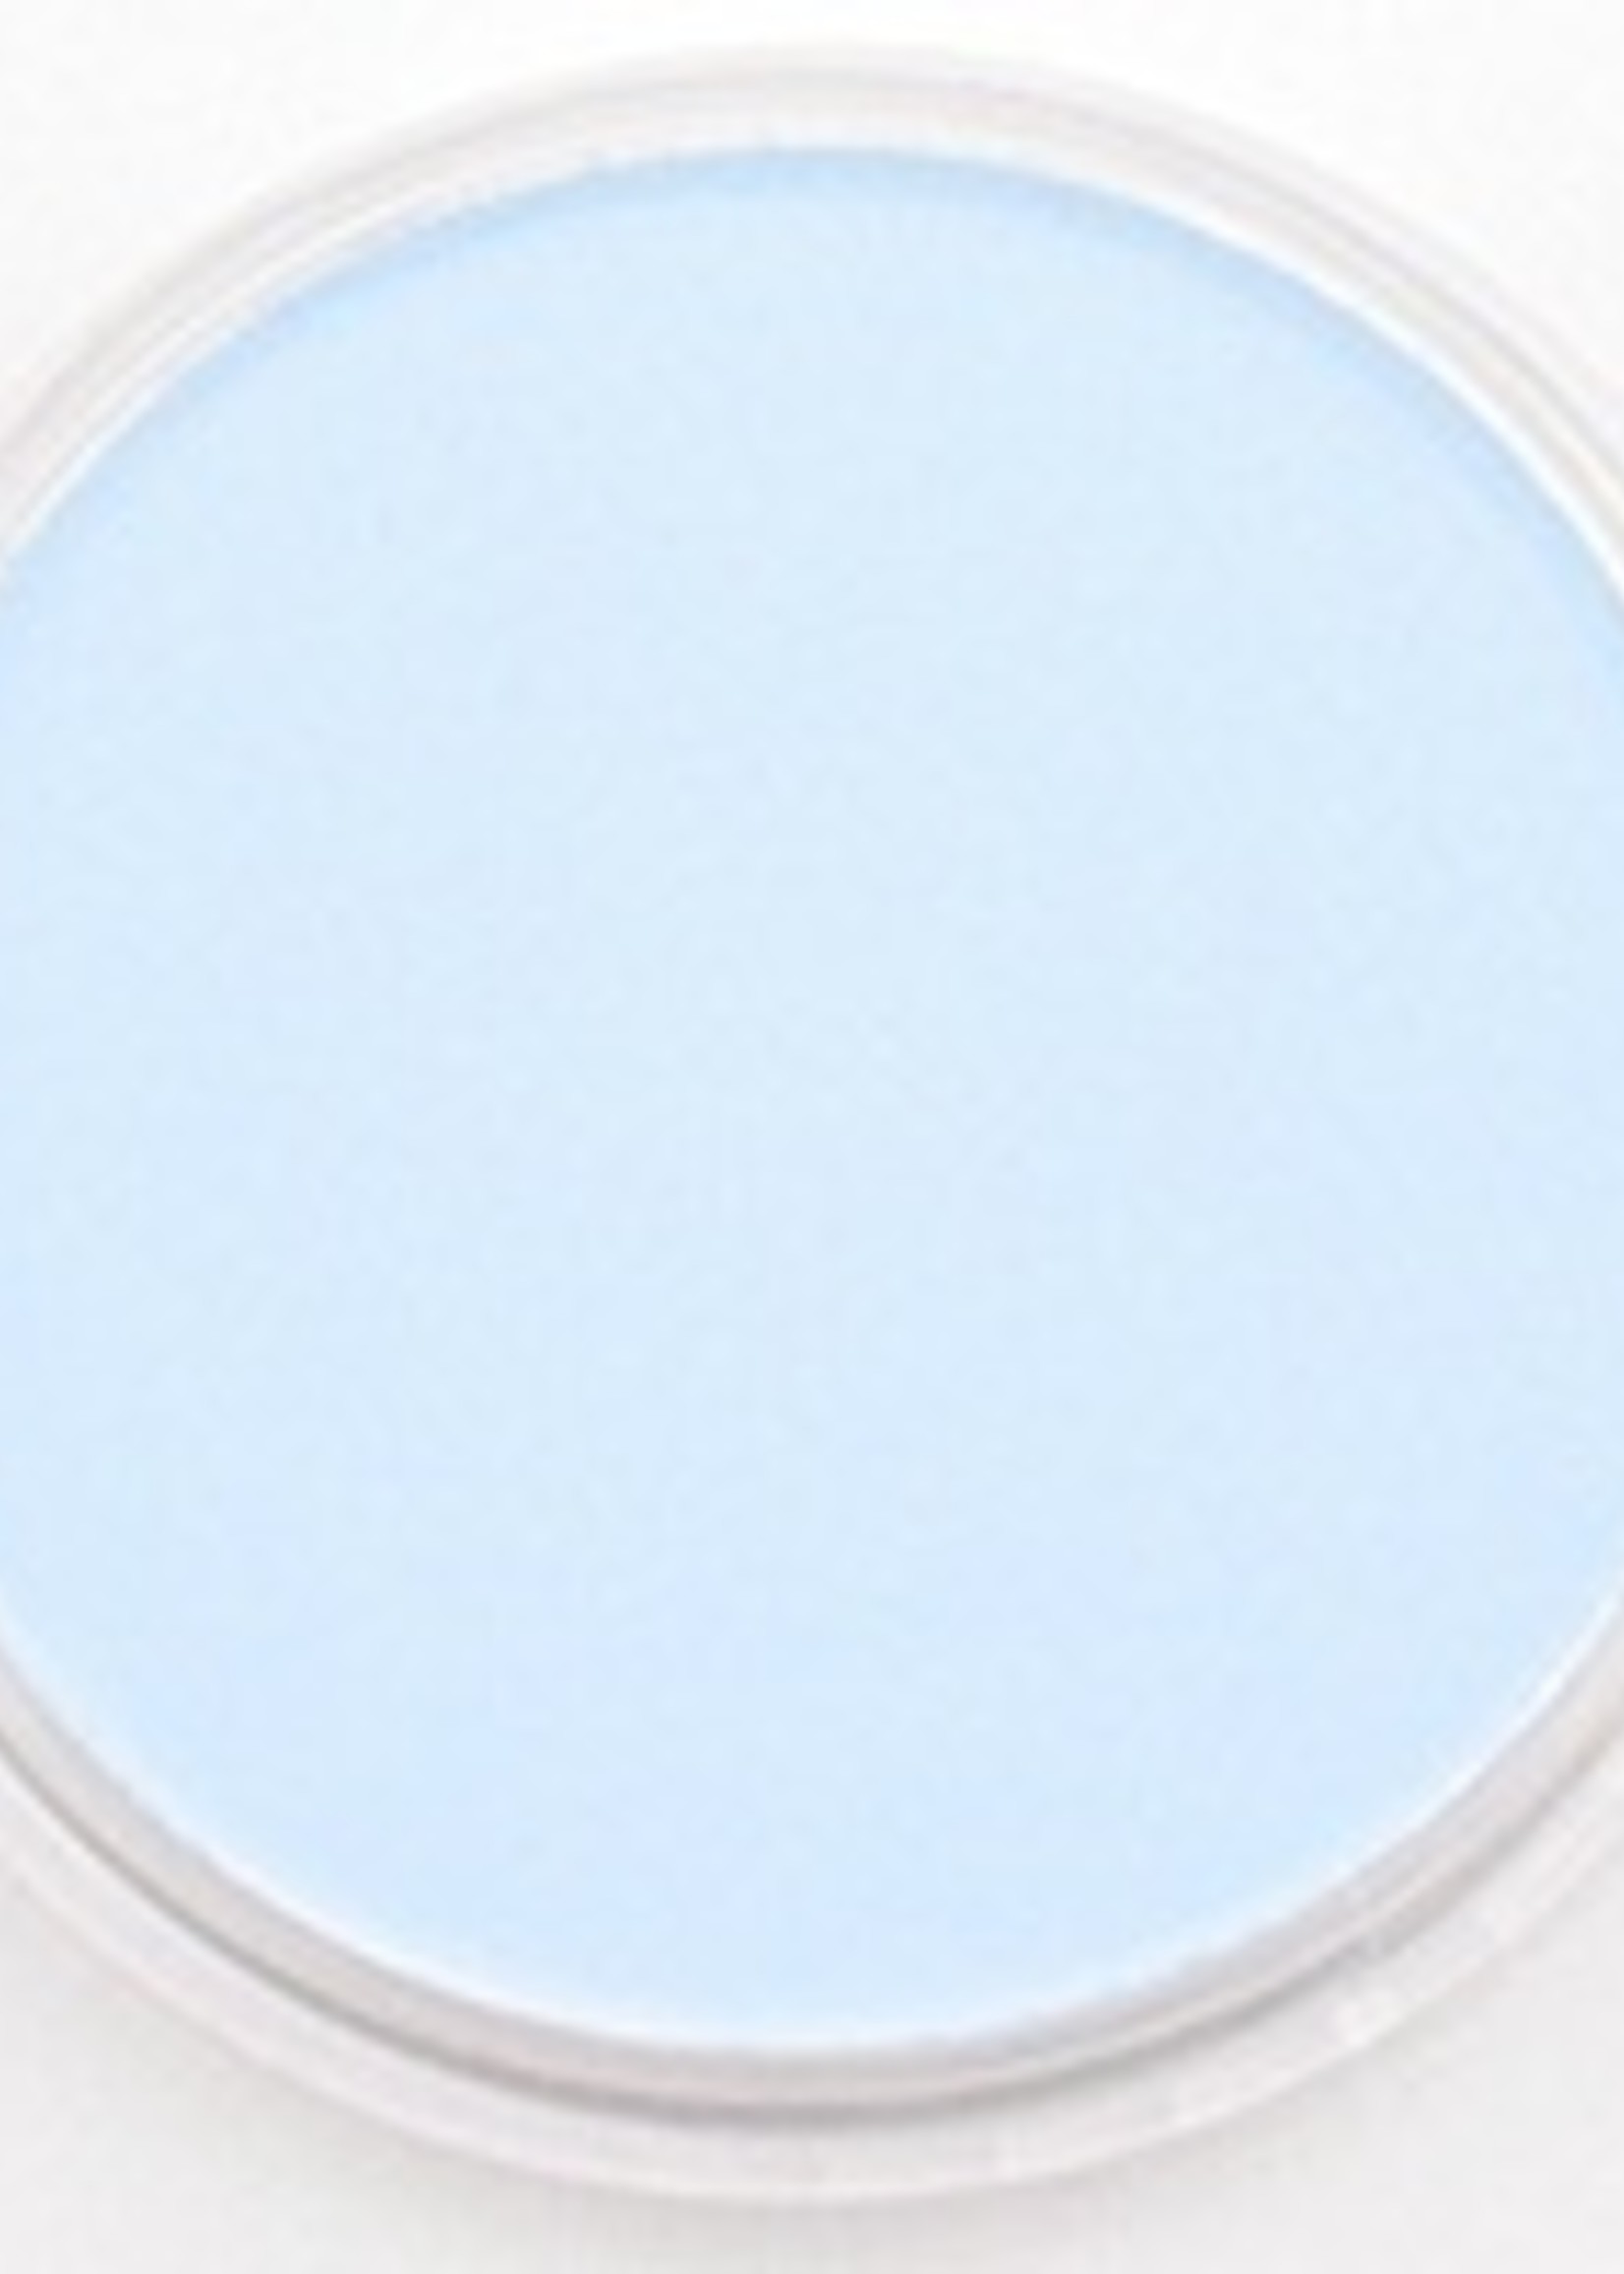 Pan Pastel PAN PASTEL PHTHALO BLUE TINT 560.8